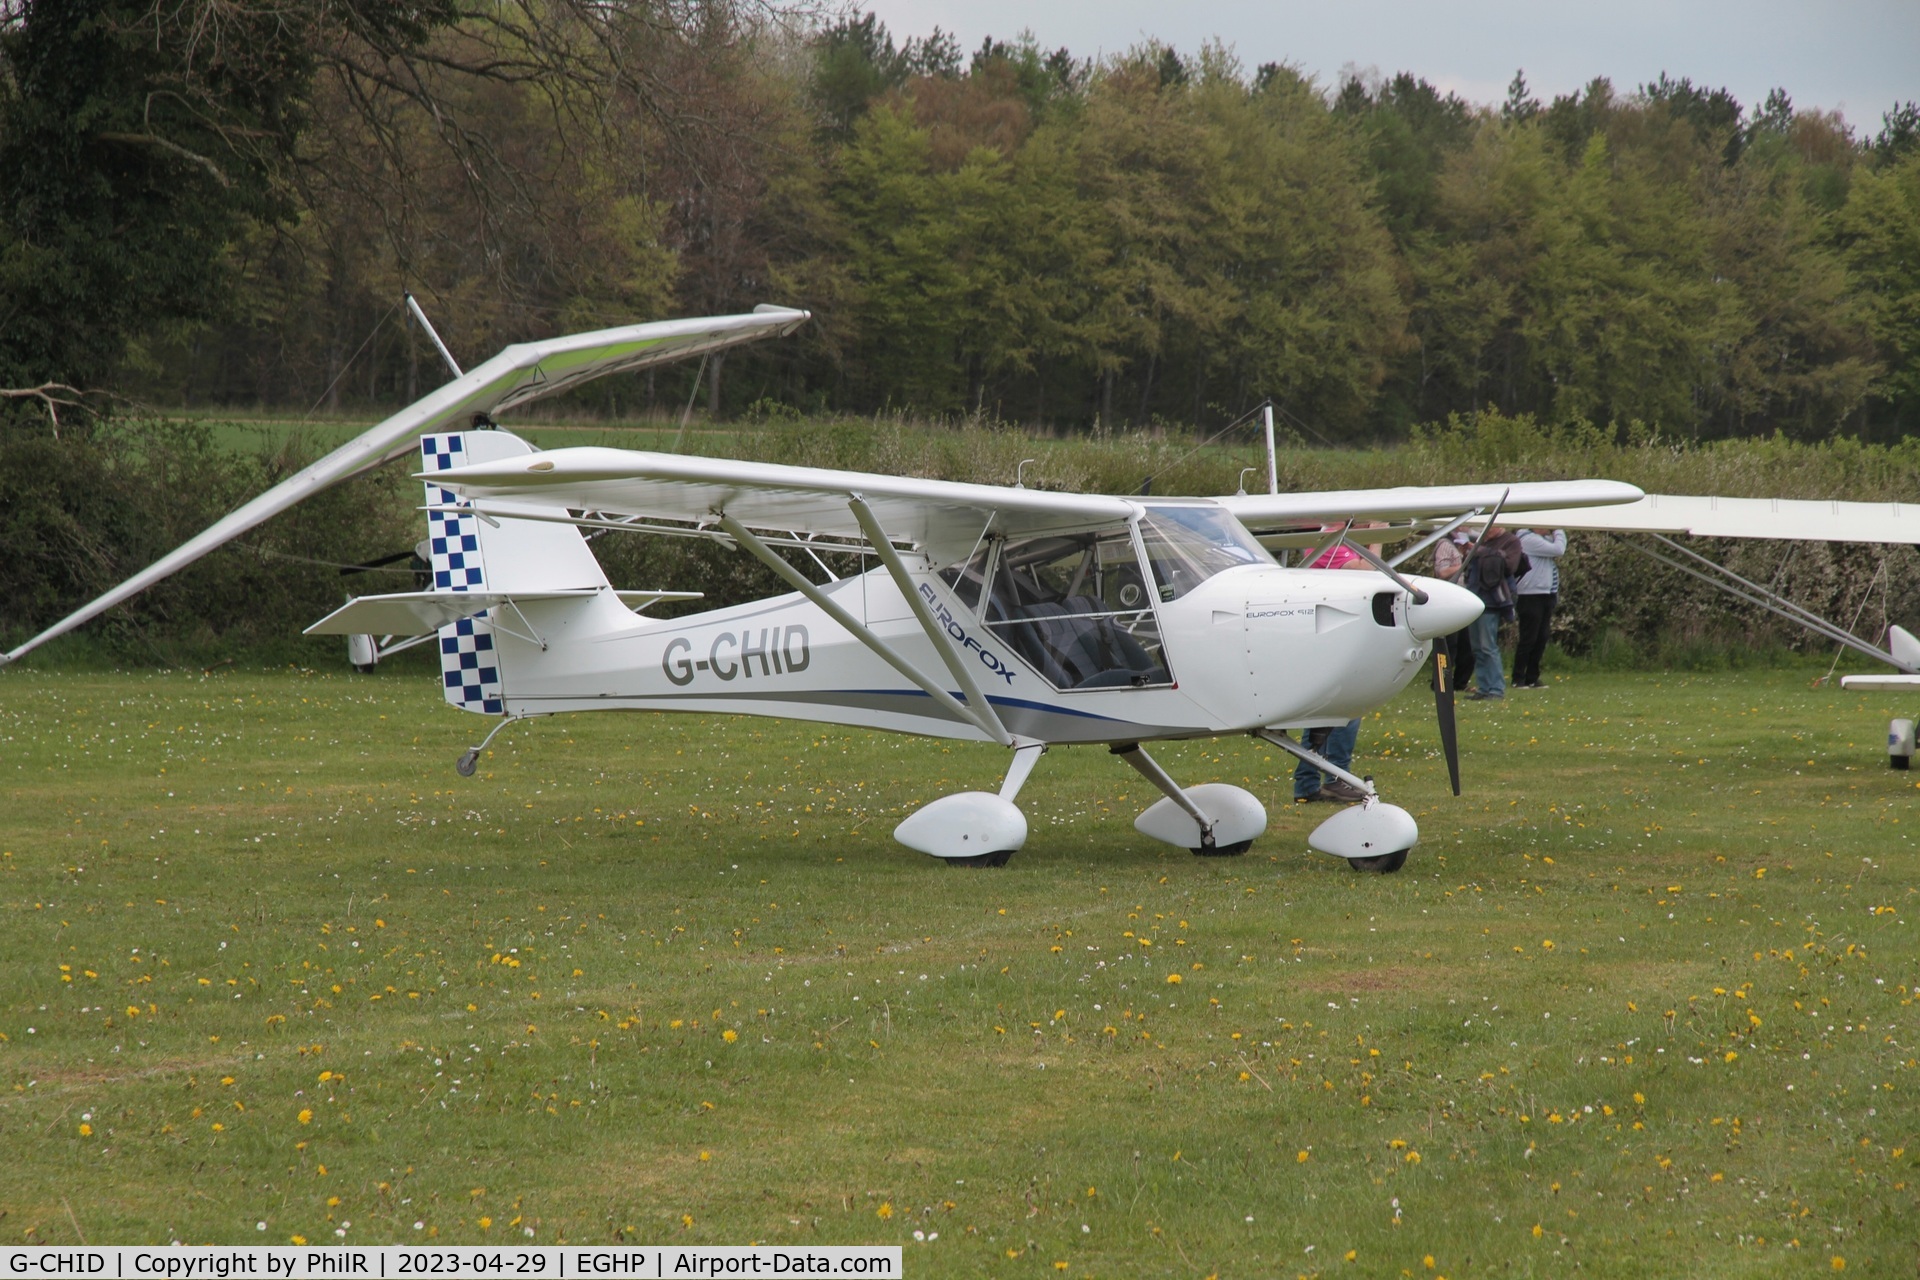 G-CHID, 2012 Aeropro Eurofox 912(1) C/N BMAA/HB/621, G-CHID 2012 Eurofox 912(2) Popham